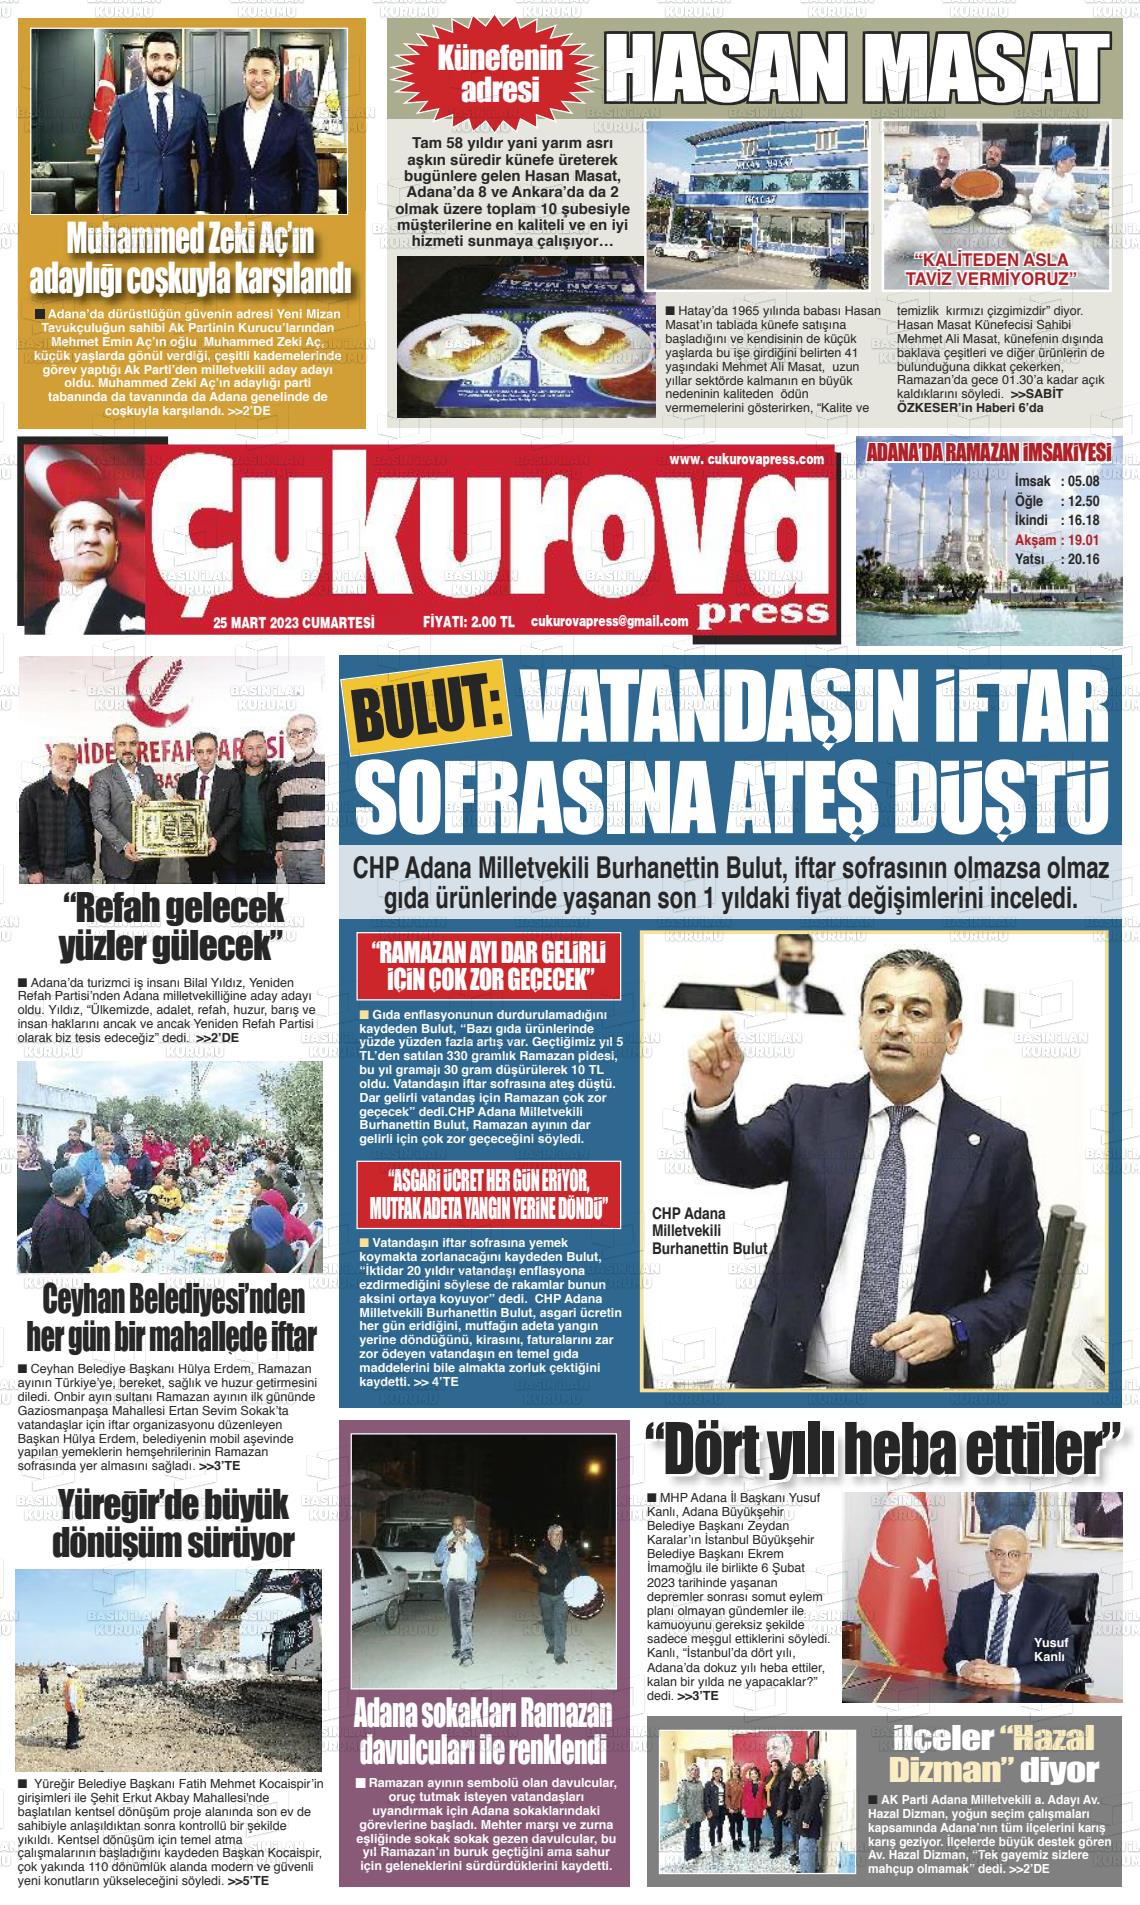 25 Mart 2023 Çukurova Press Gazete Manşeti